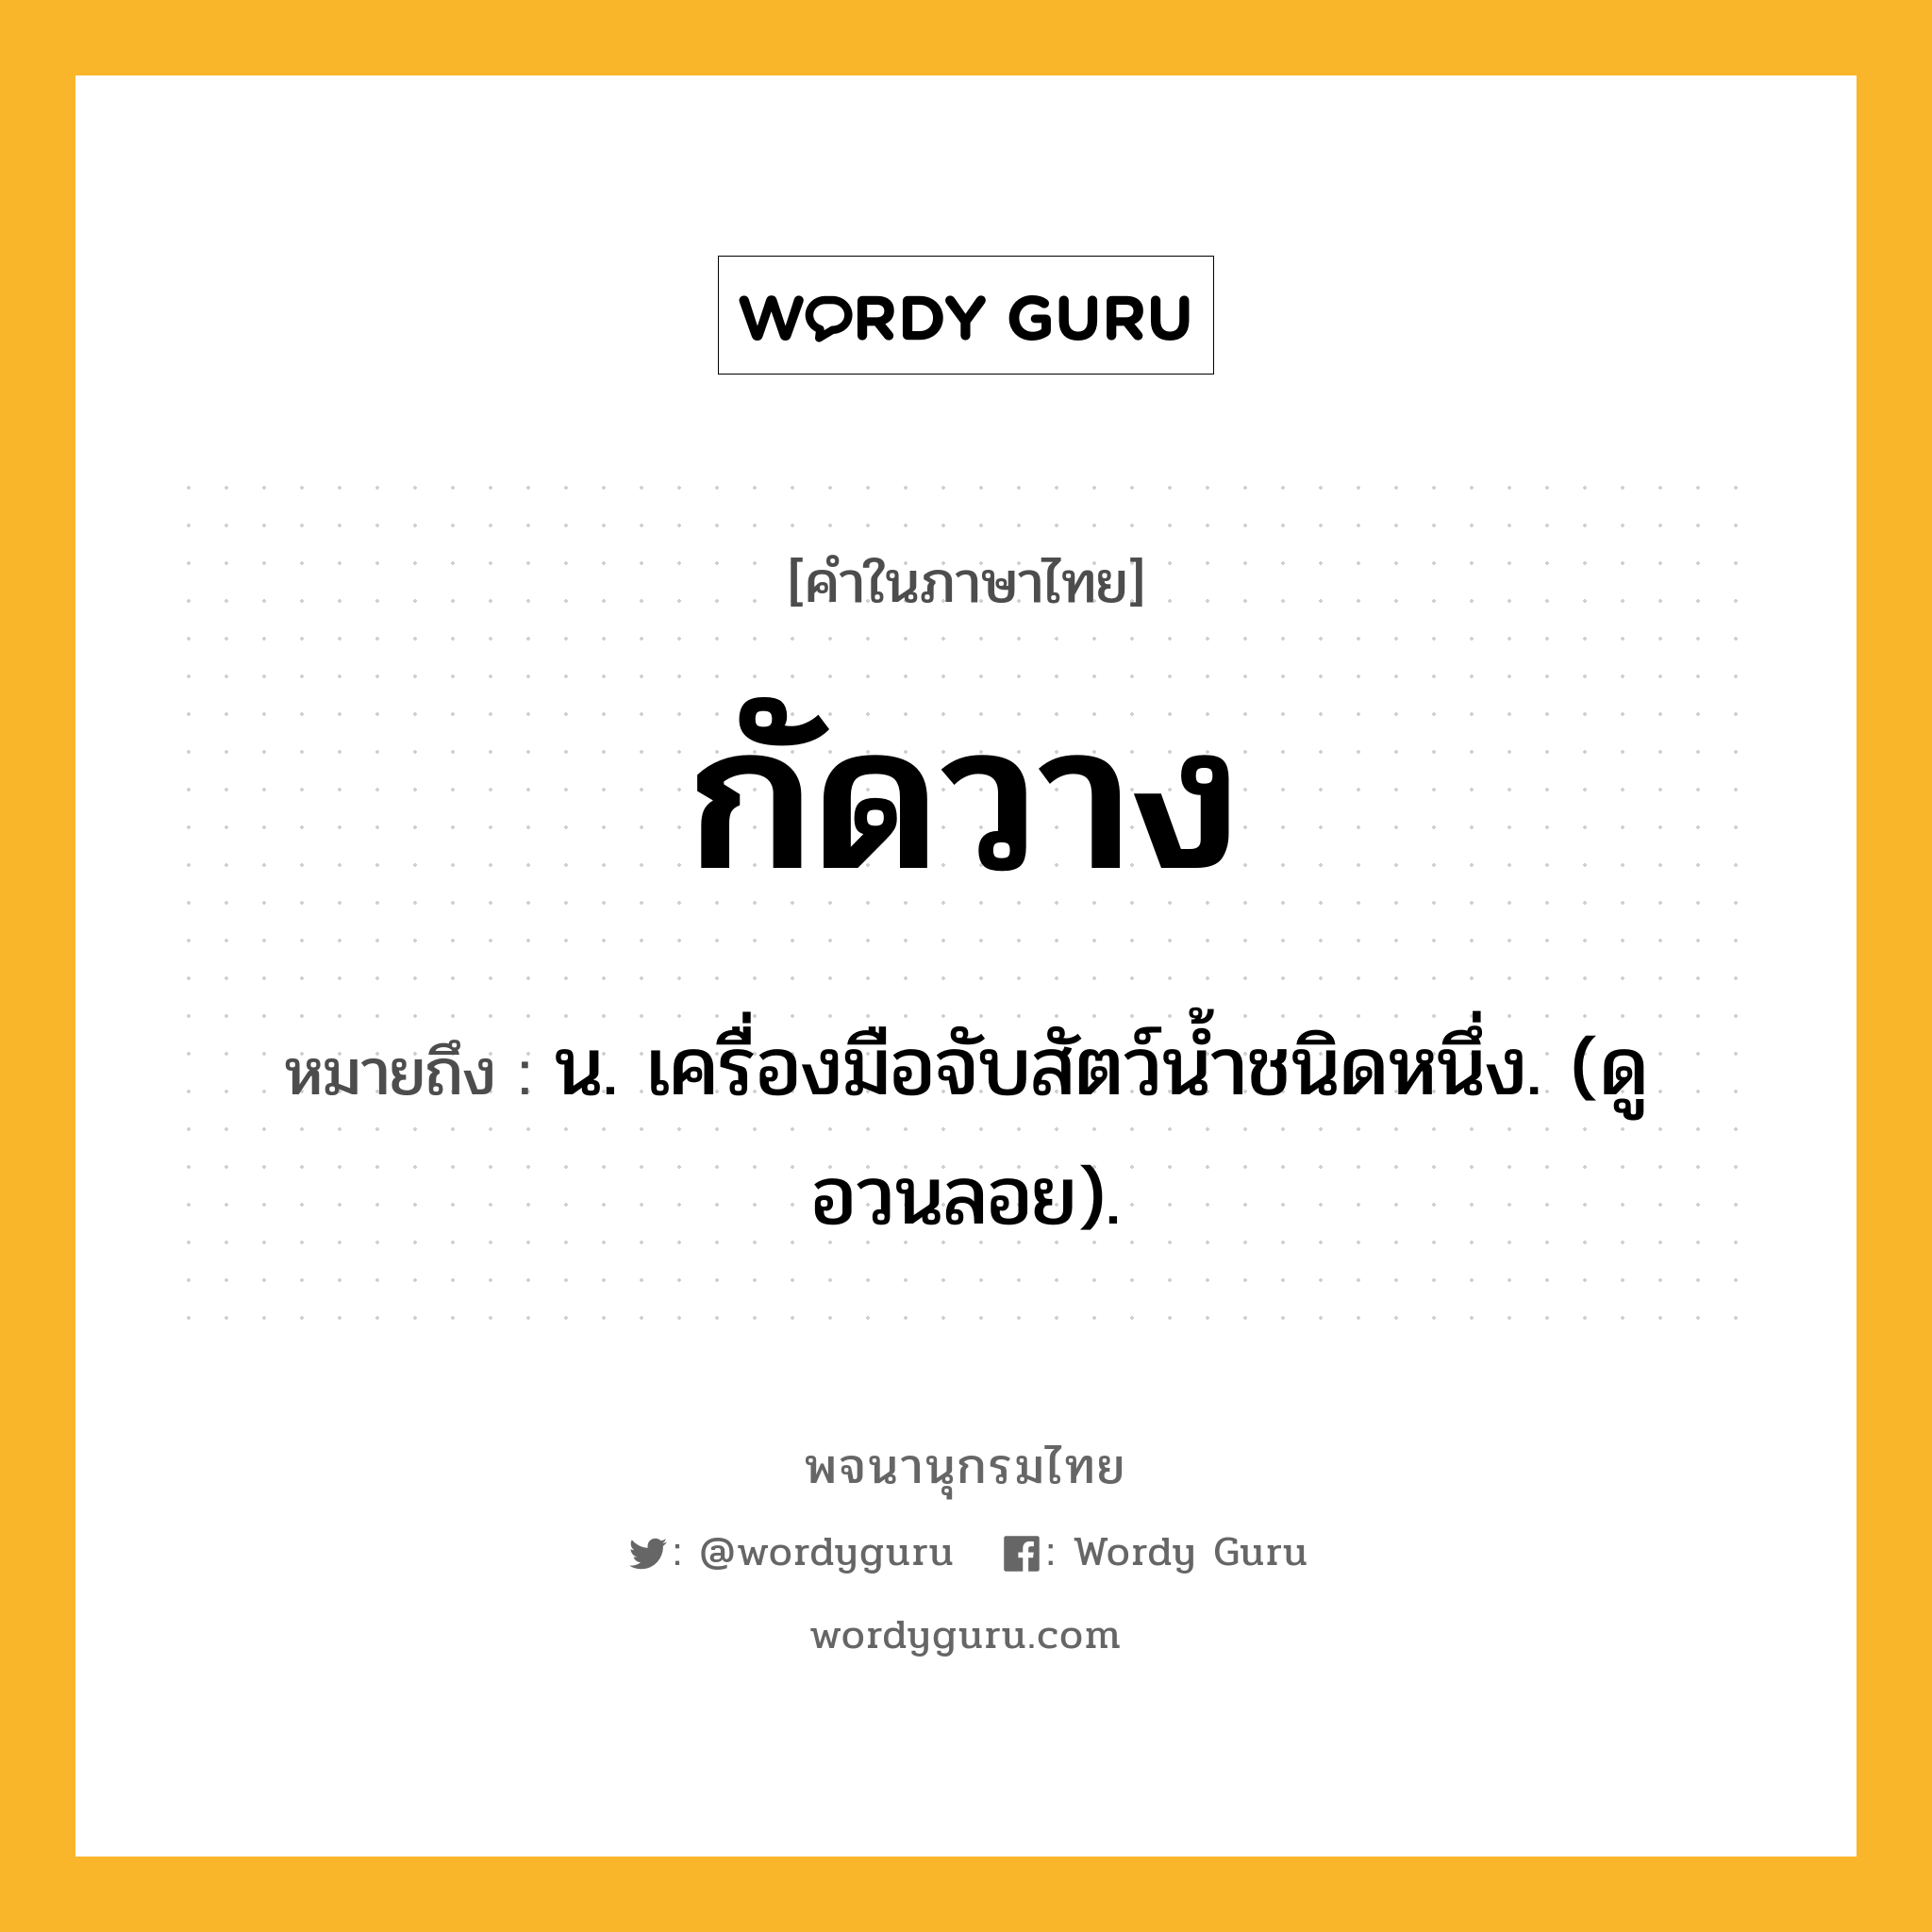 กัดวาง หมายถึงอะไร?, คำในภาษาไทย กัดวาง หมายถึง น. เครื่องมือจับสัตว์นํ้าชนิดหนึ่ง. (ดู อวนลอย).